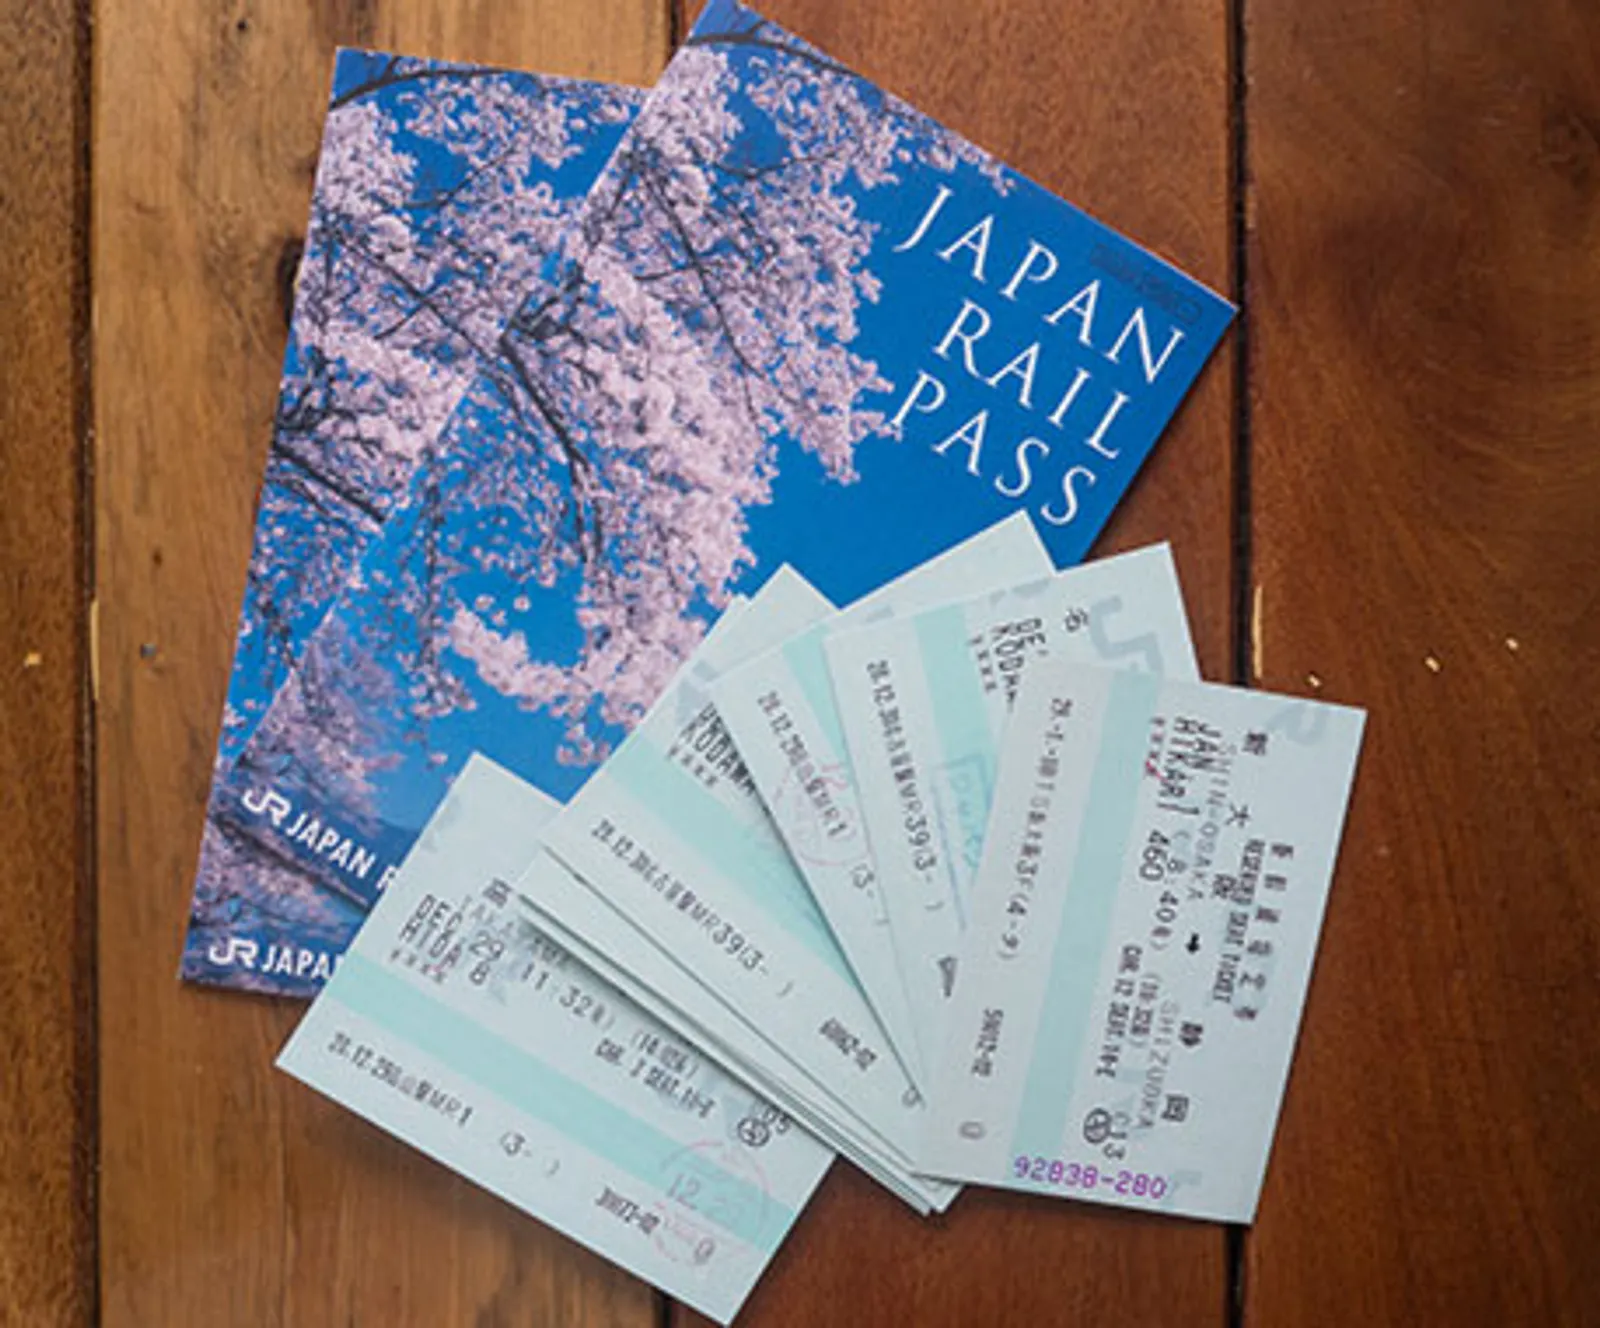 10 Hal Ini Harus Dipahami Sebelum Liburan ke Jepang, Catat Ya!